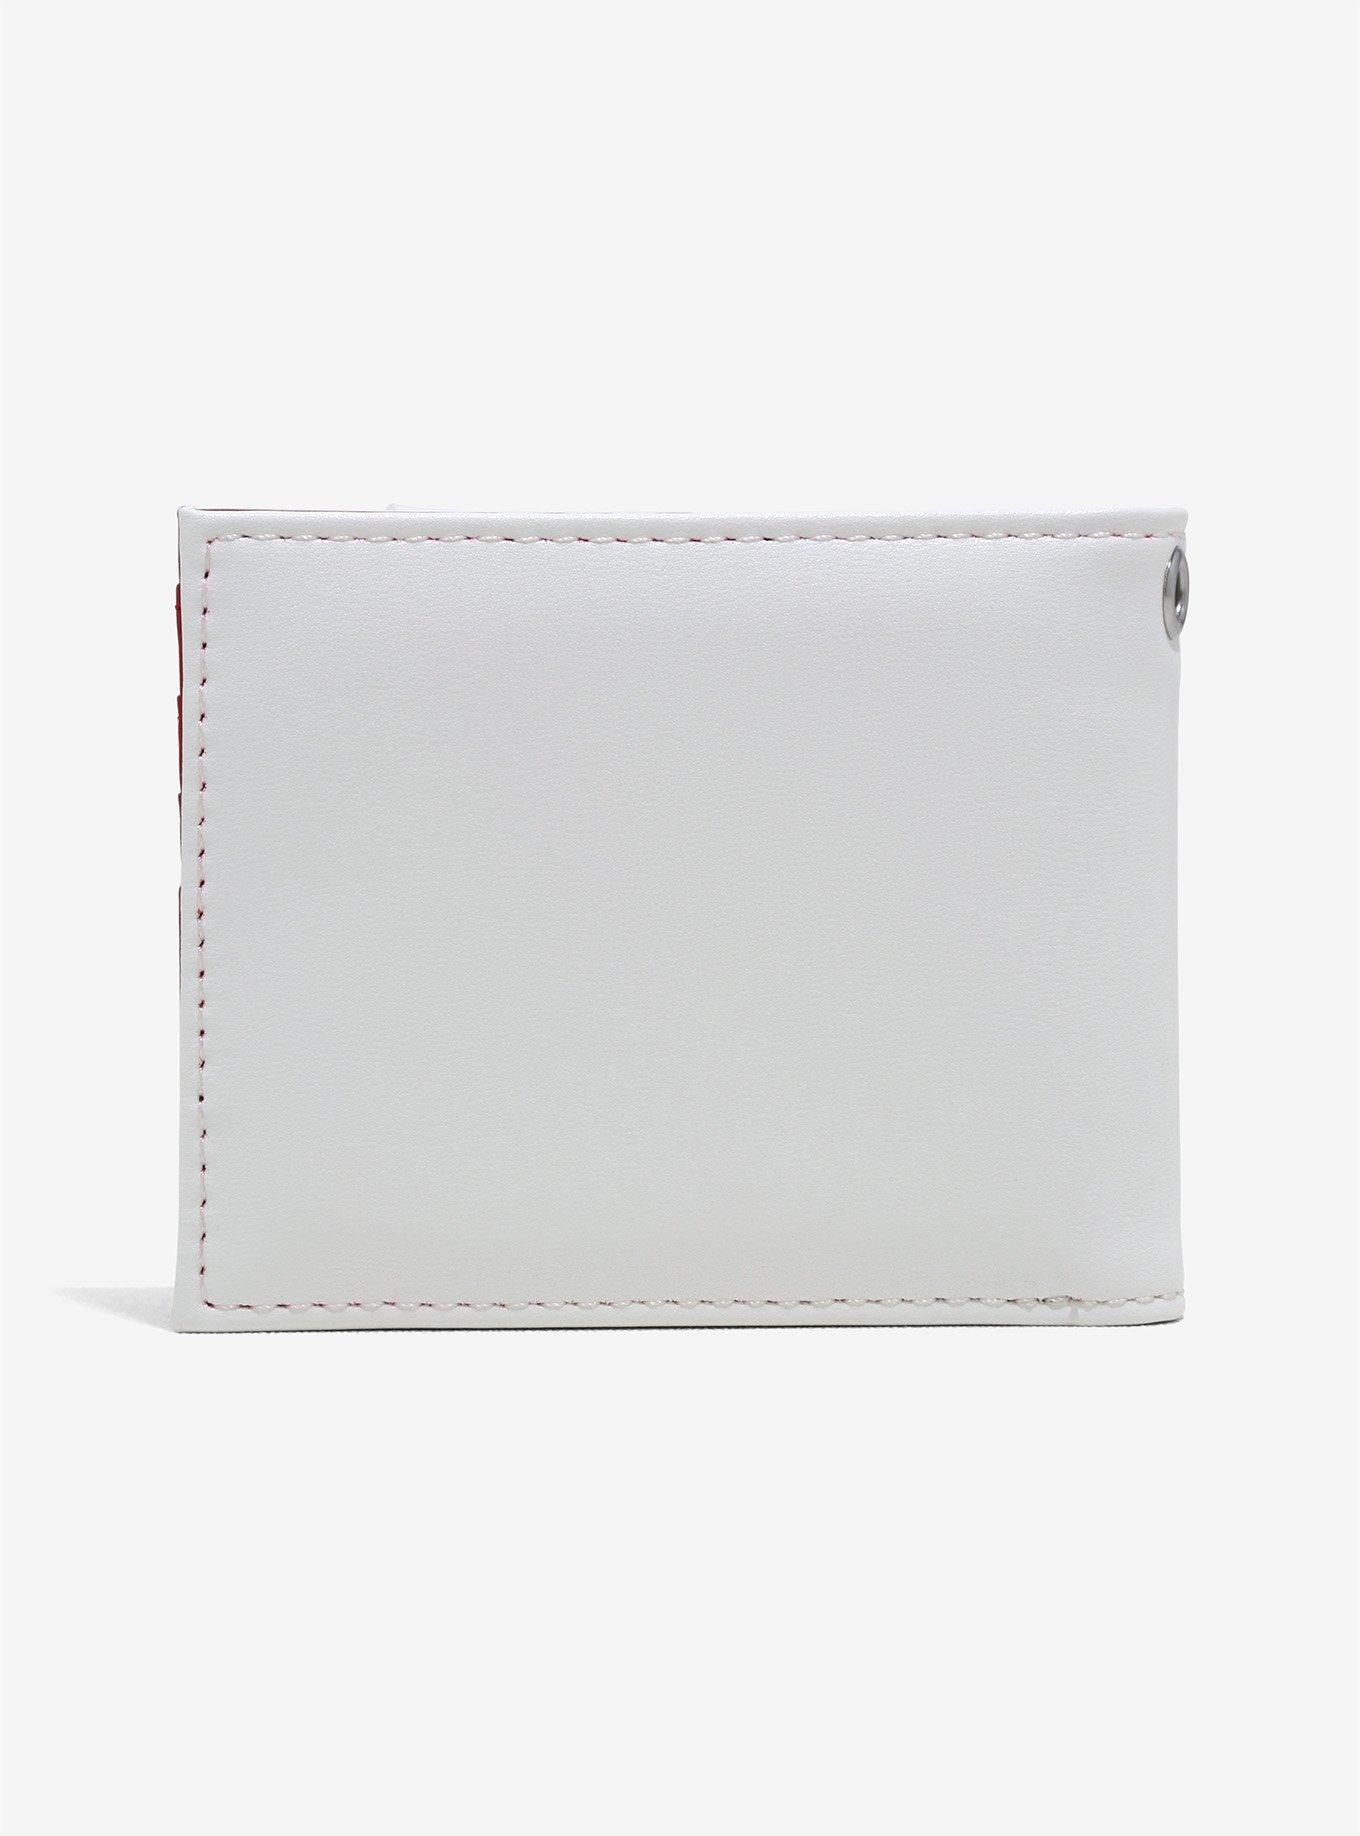 Maruchan Instant Lunch Ramen Bi-Fold Wallet, , alternate